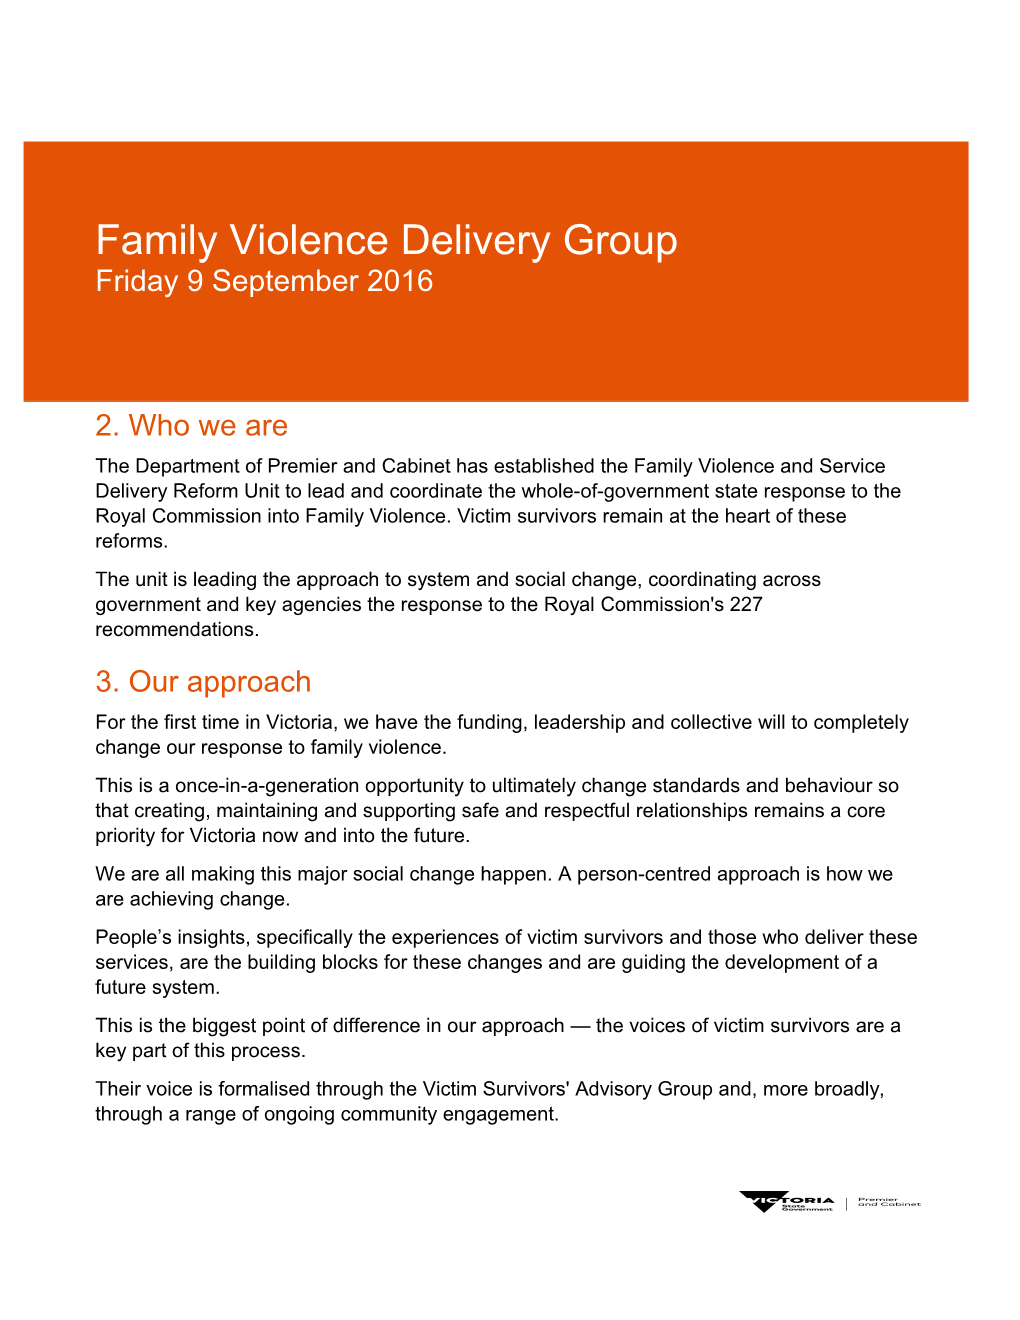 Family Violence Newsletter - 9 September 2016